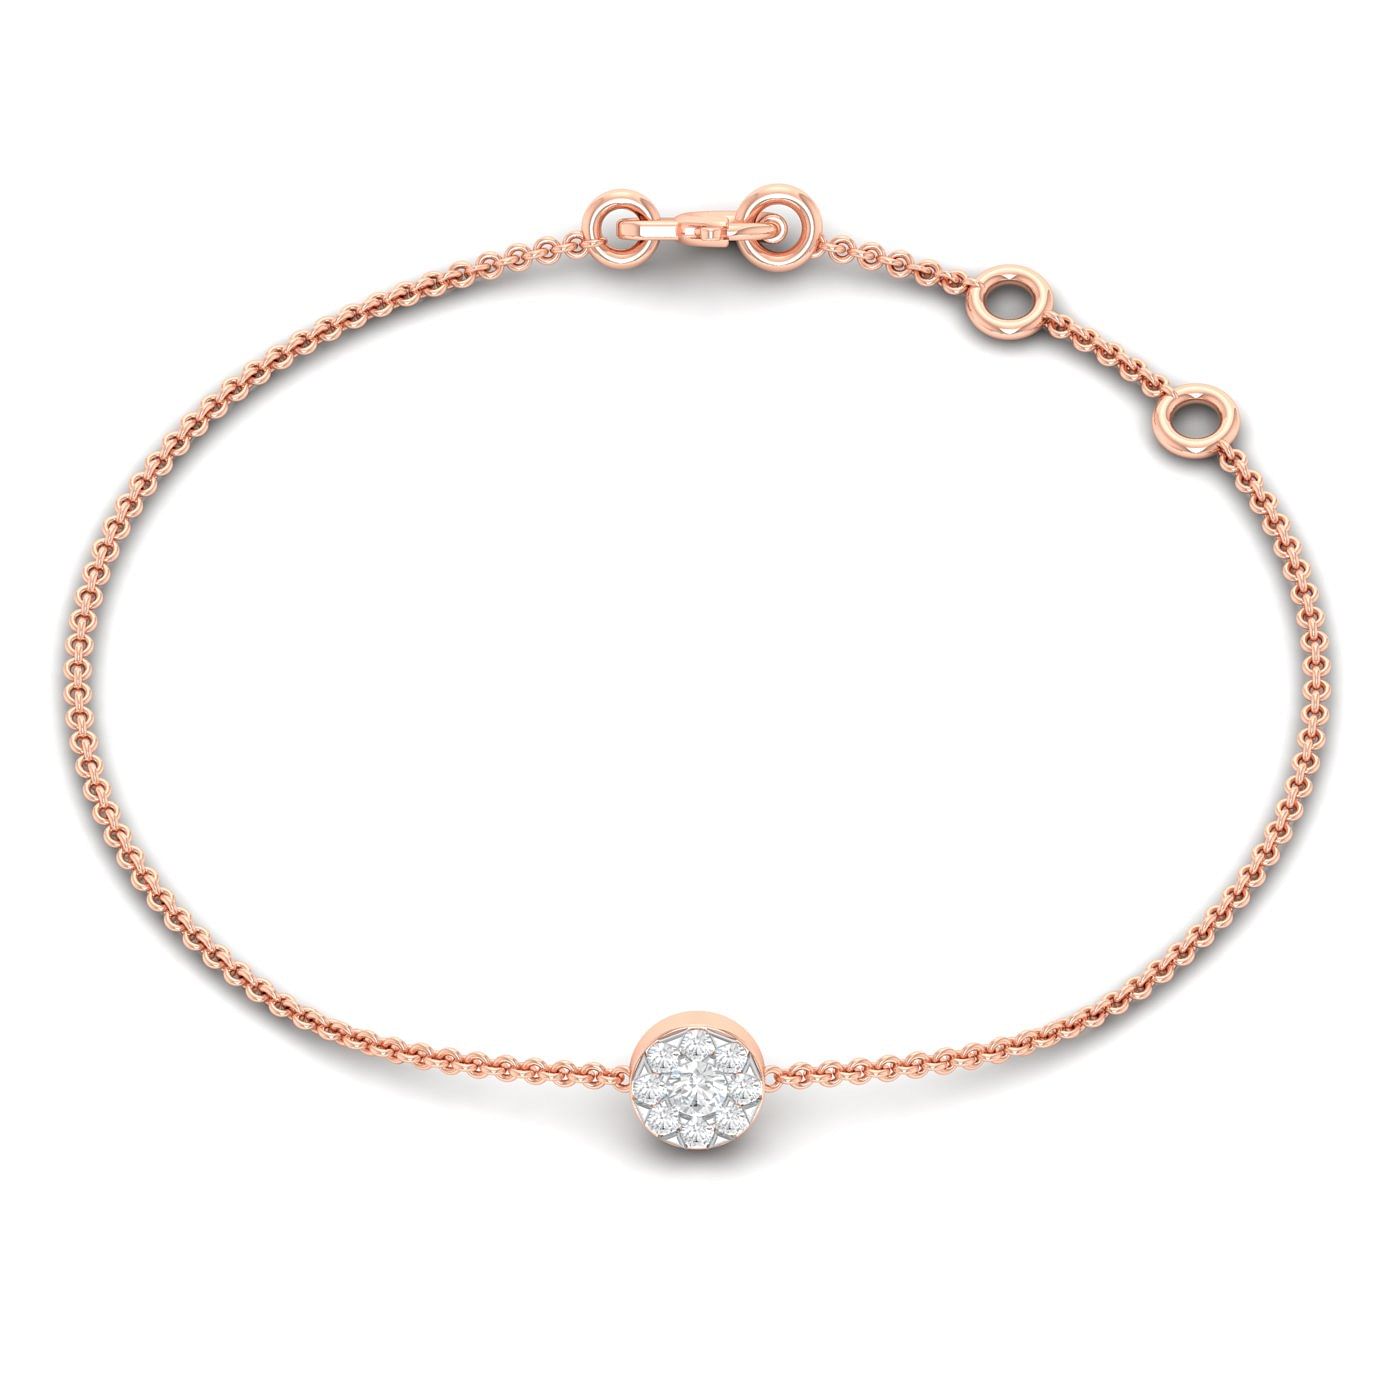 One Stone Glorious Diamond Bracelet For Women Gift